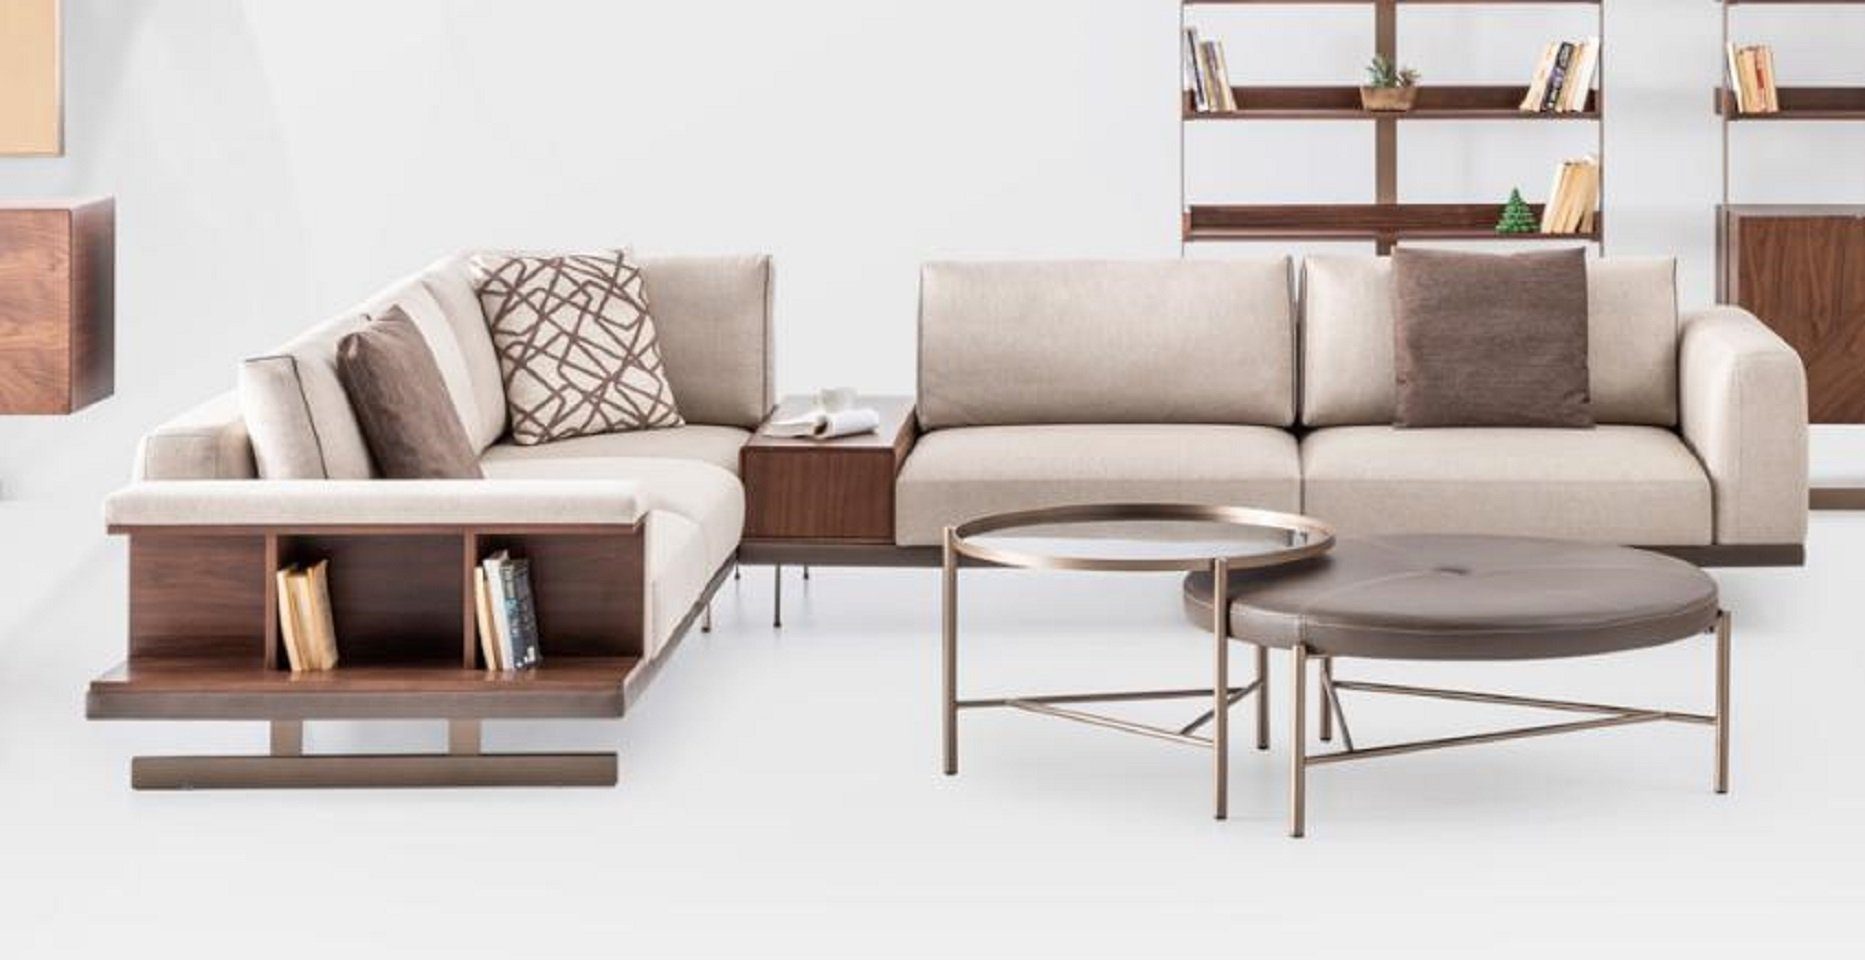 JVmoebel Ecksofa Modernes Beiges Ecksofa Luxus L-Form Couch Wohnzimmermöbel, 1 Teile, Made in Europe